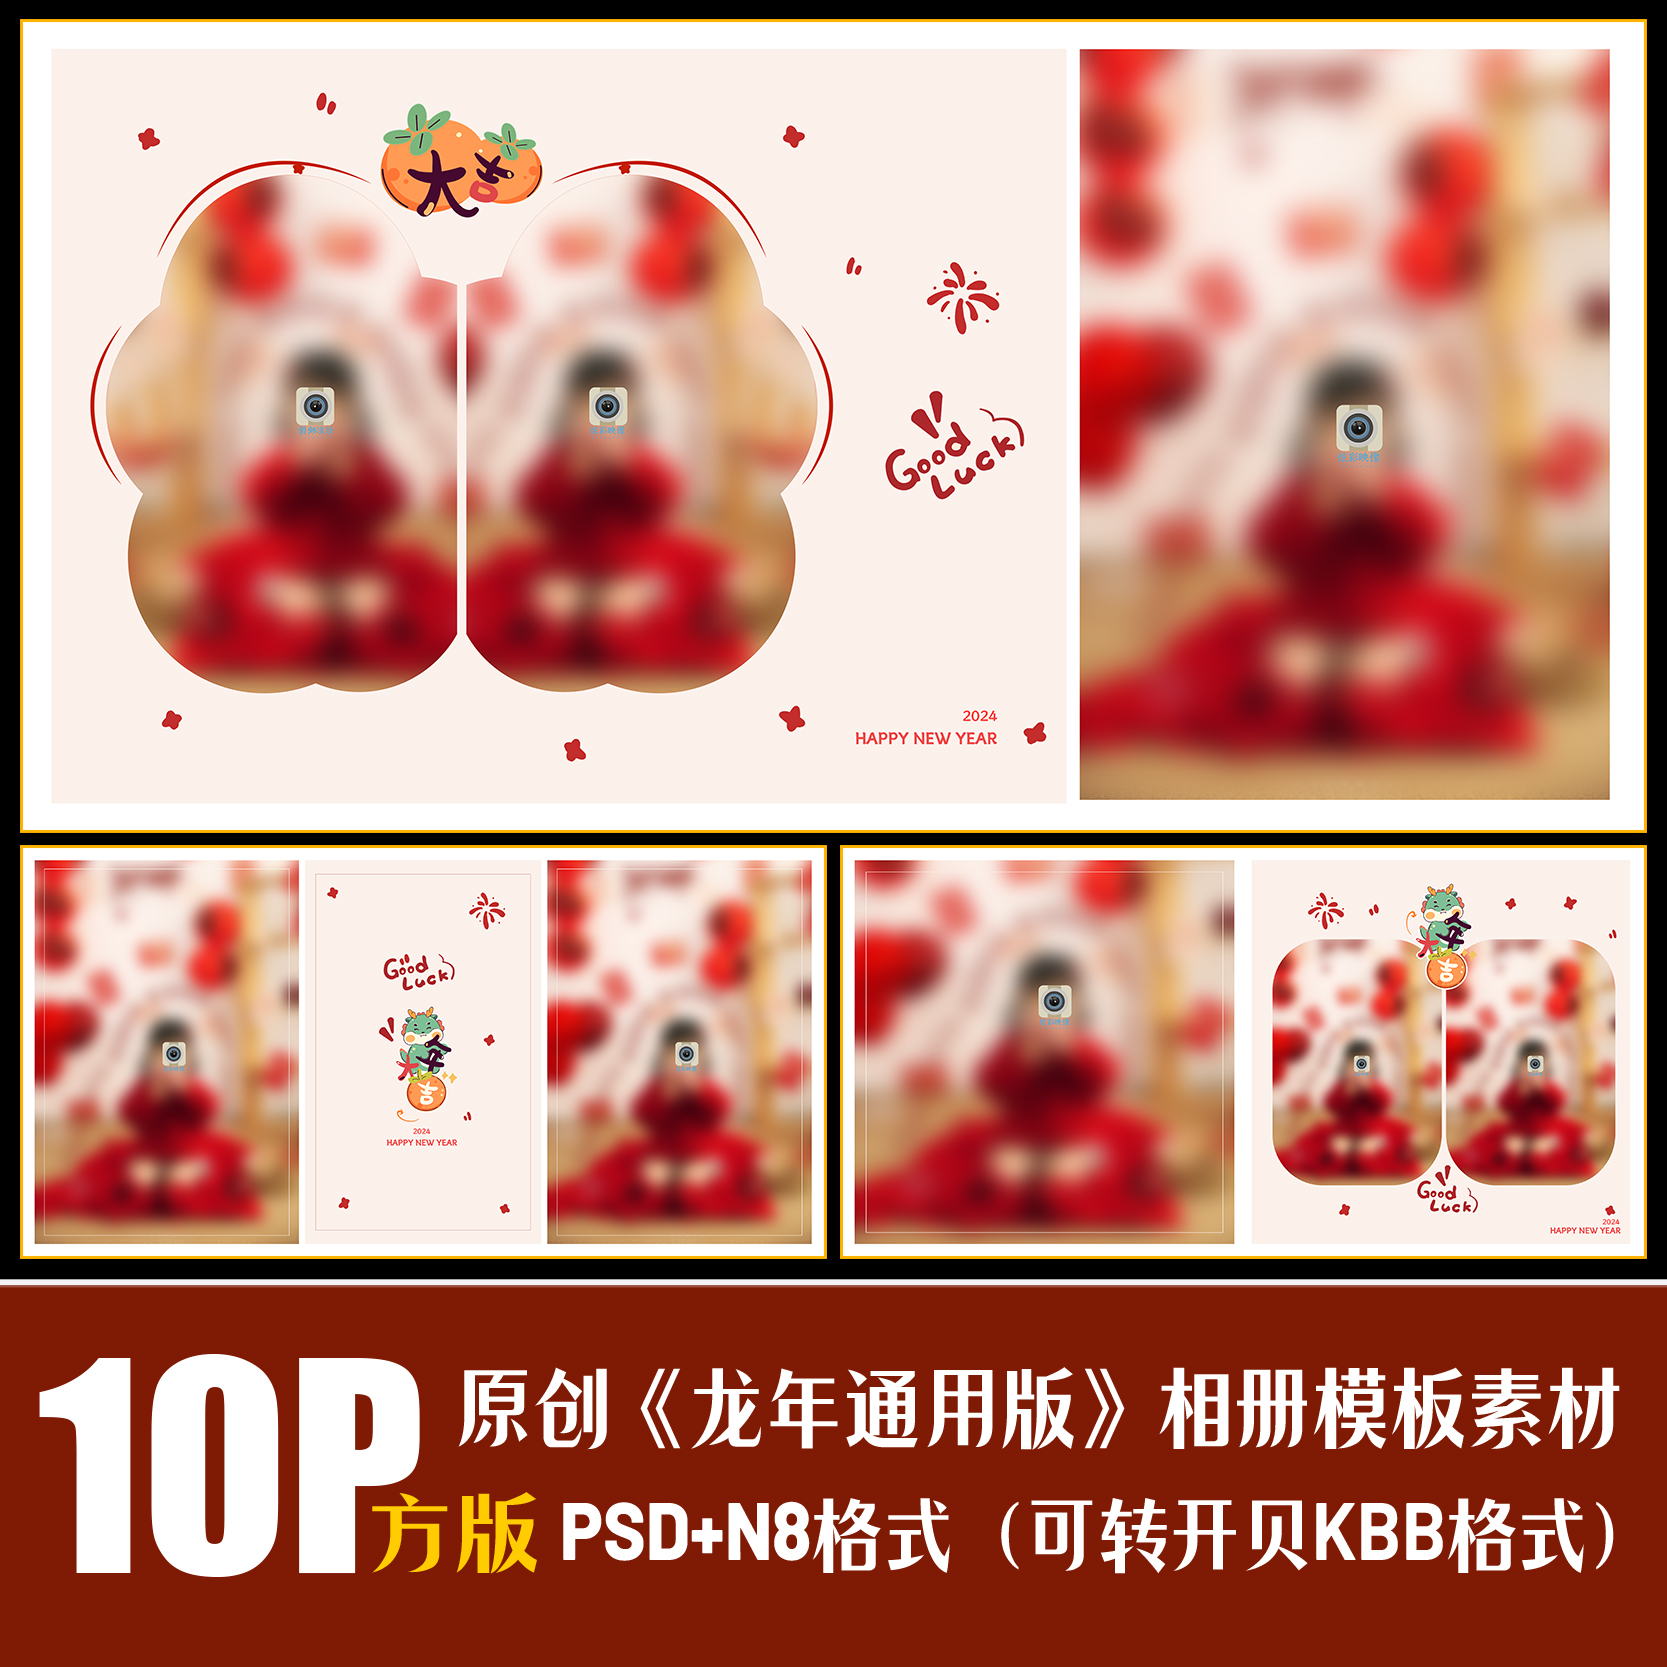 416龙新年相册PSD儿童写真模板春节红色喜庆摄影楼排版PS素材方版